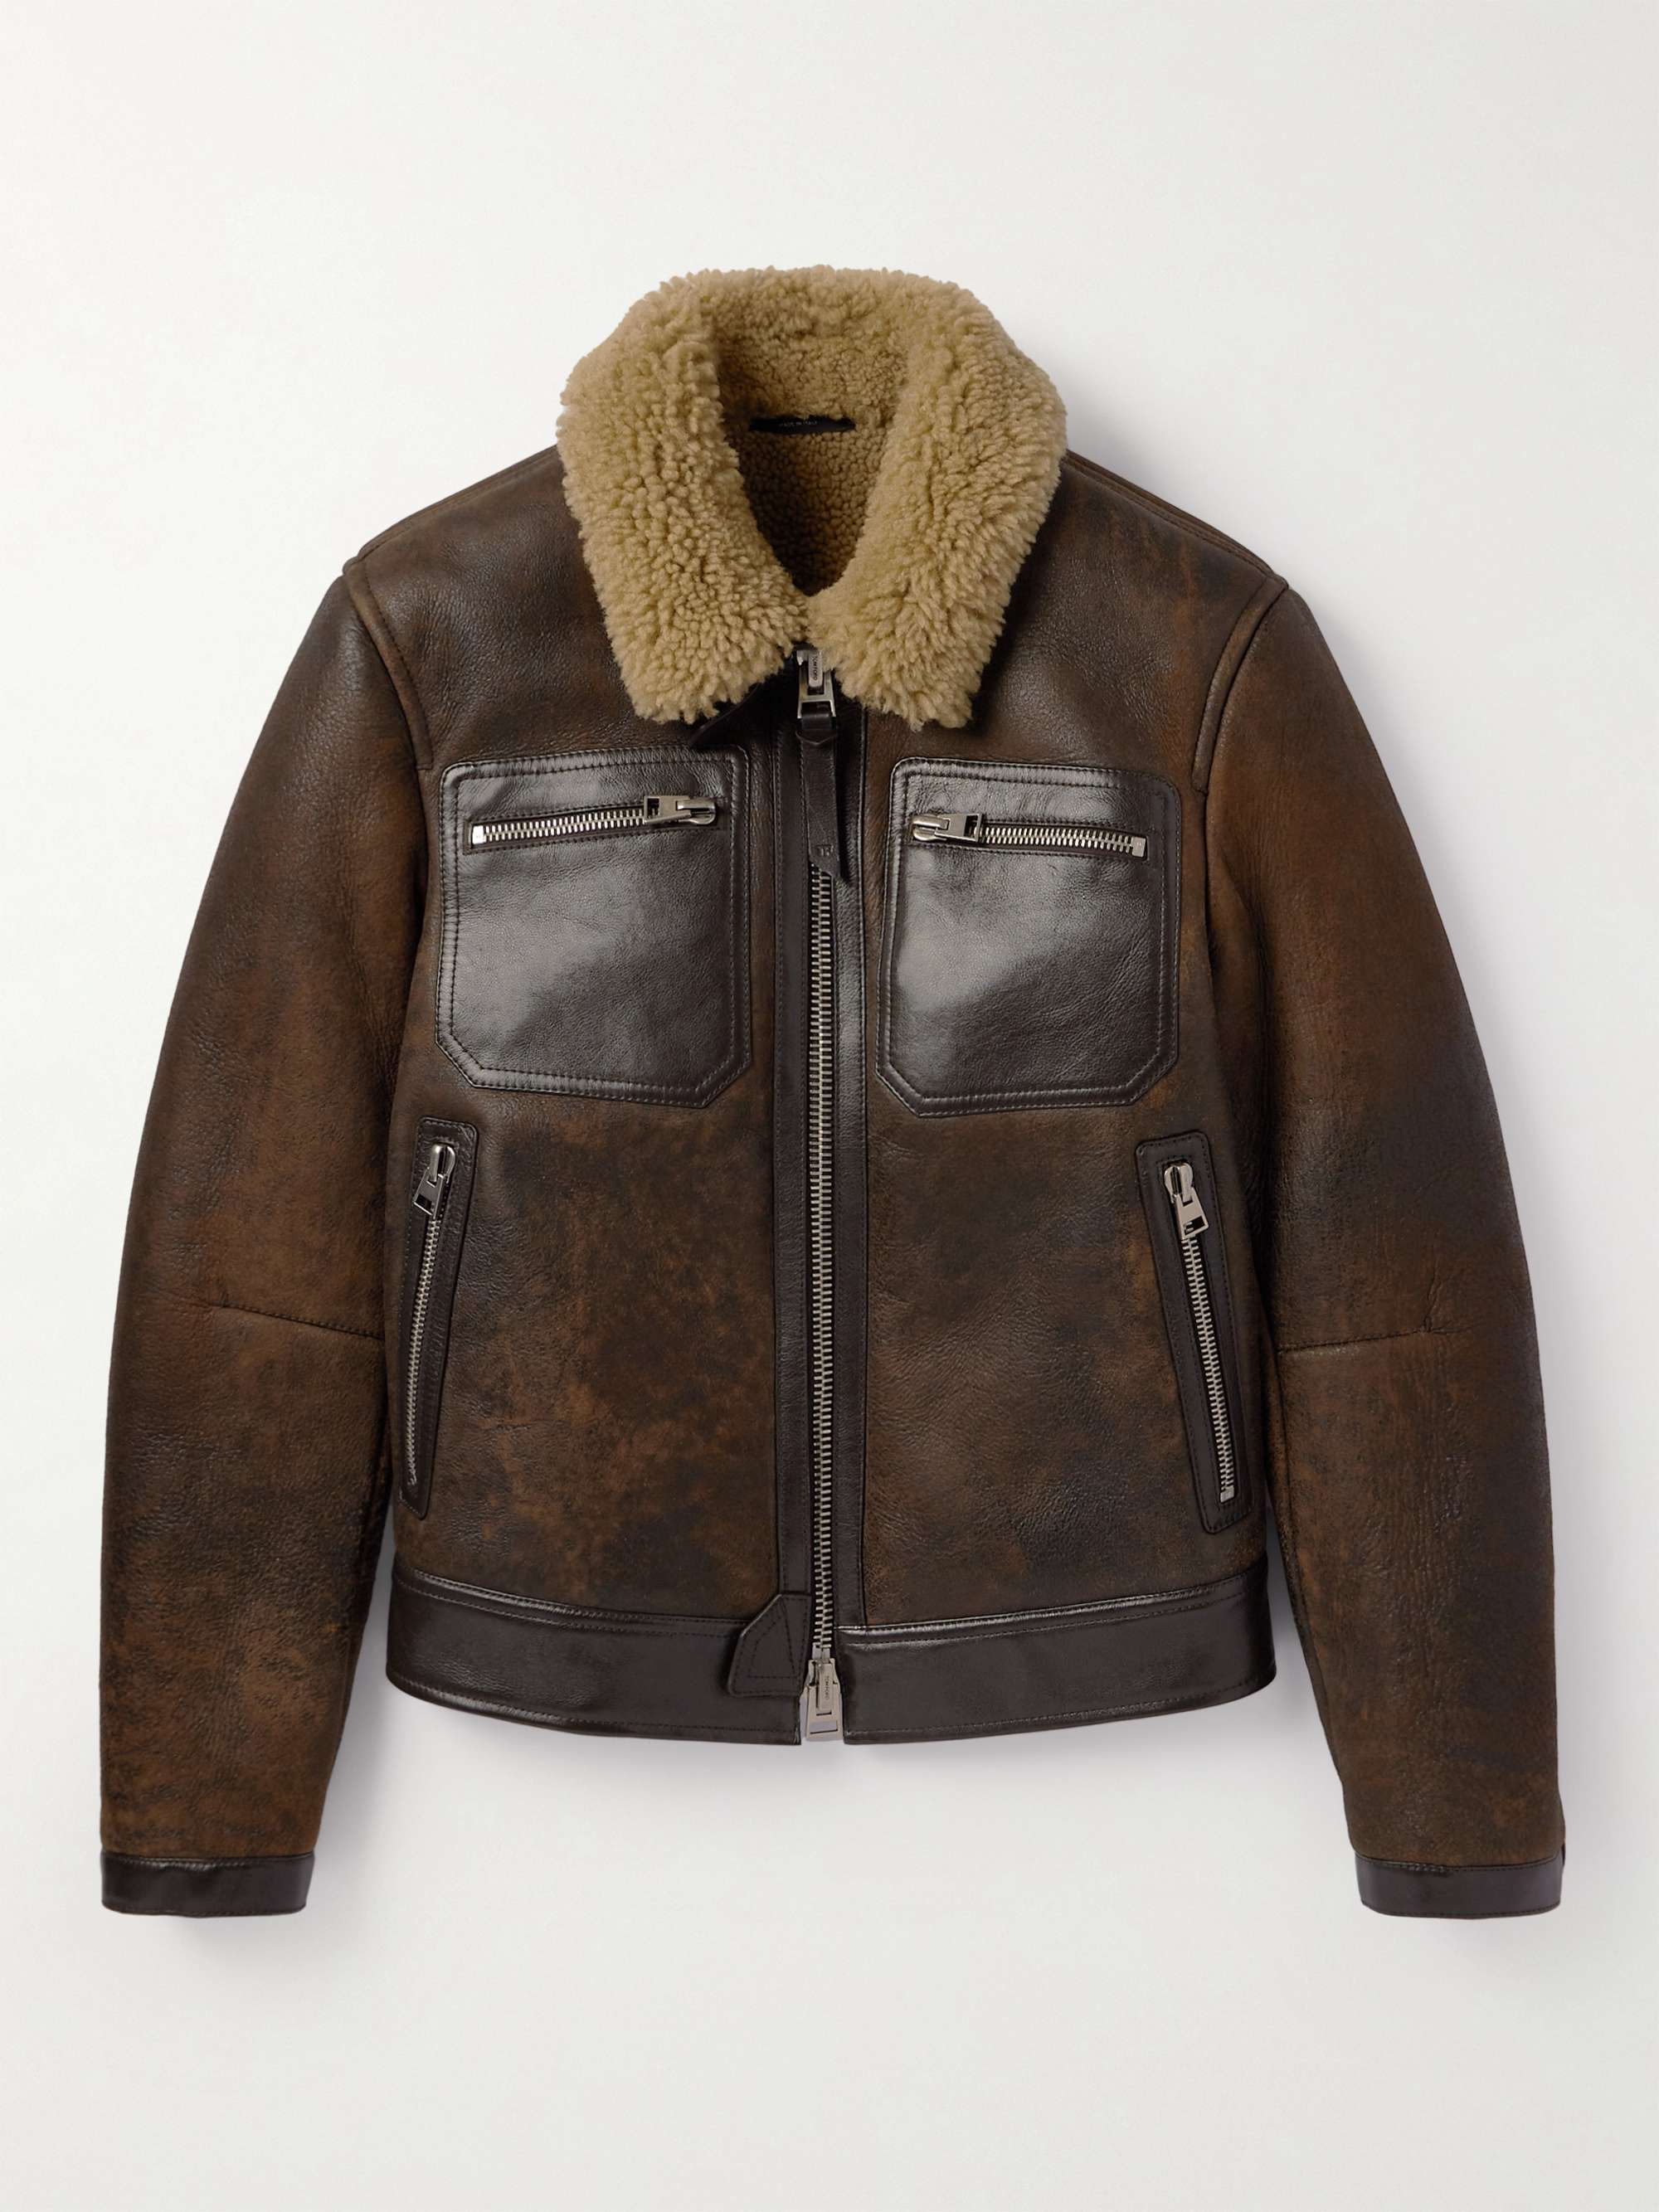 TOM FORD Shearling-Trimmed Leather Jacket for Men | MR PORTER